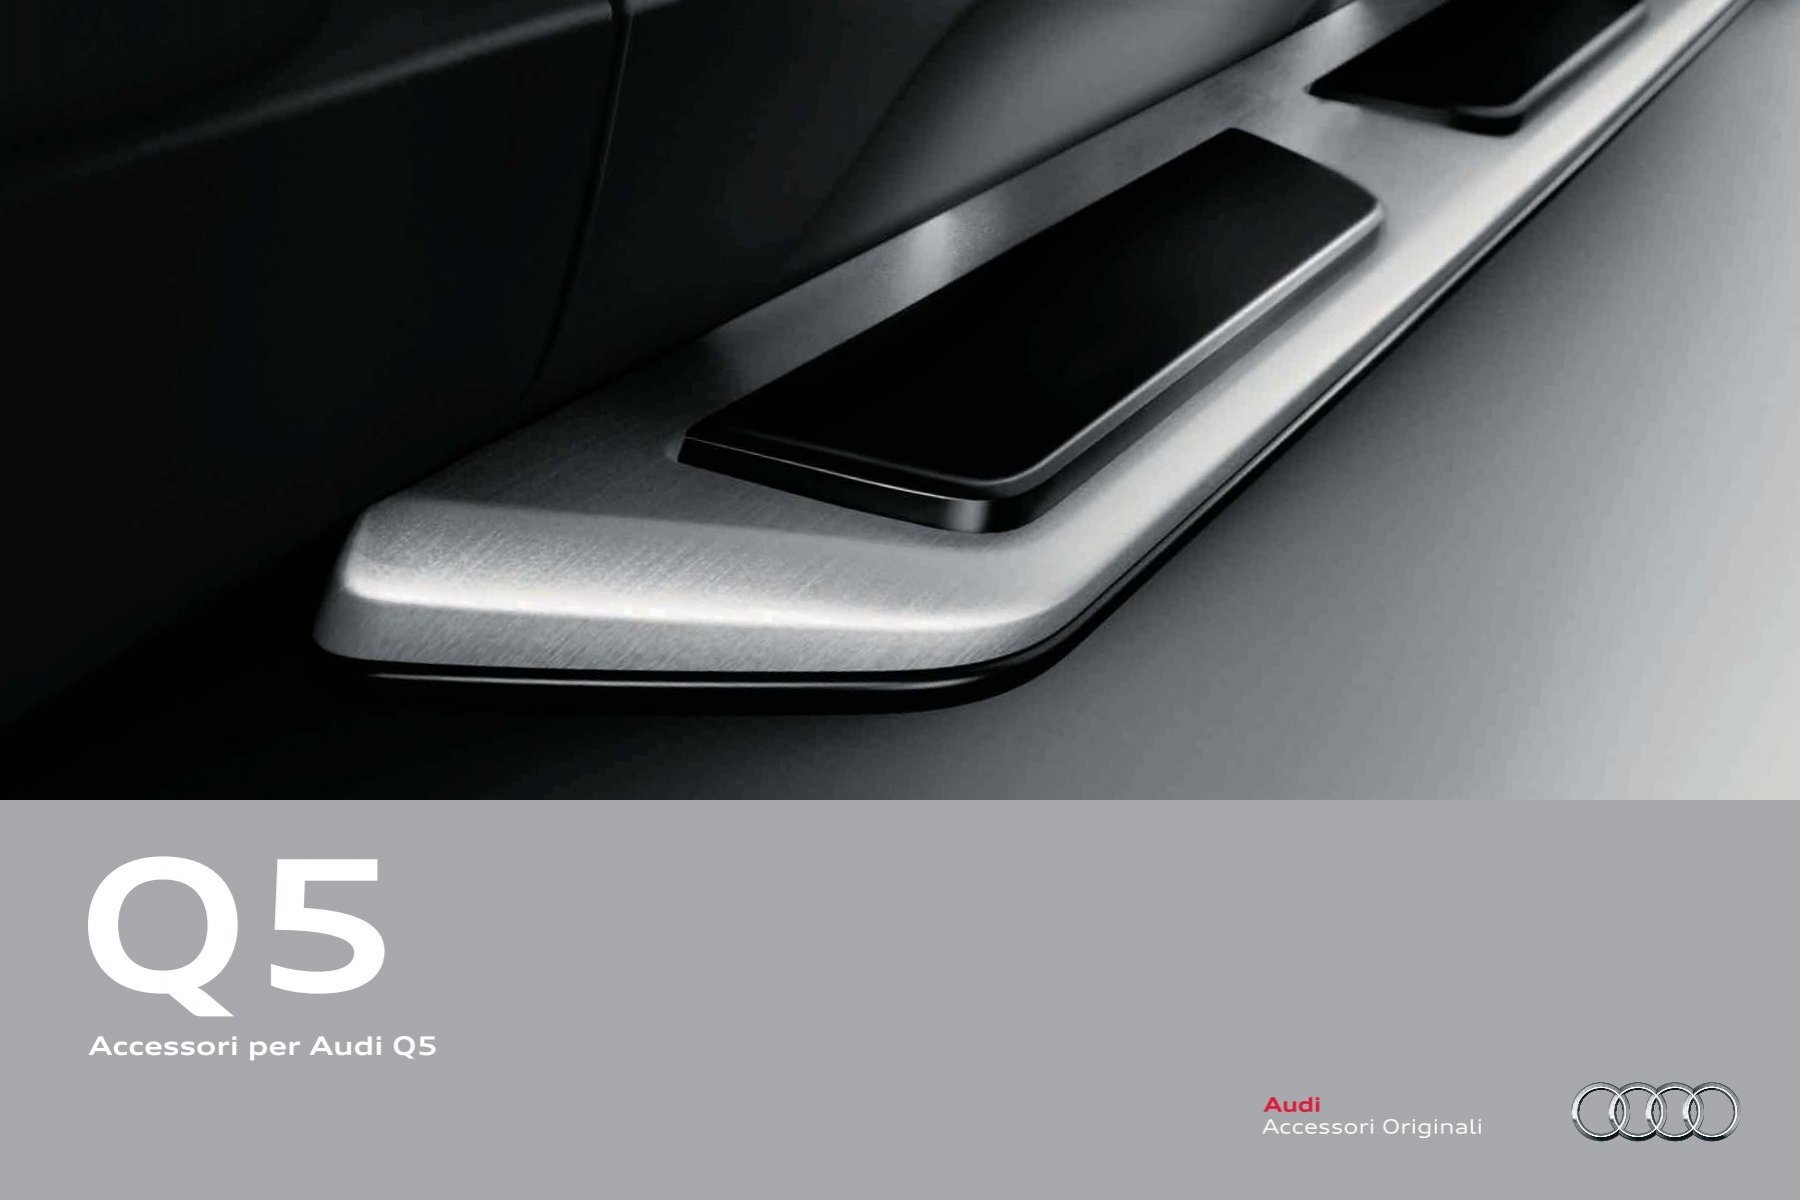 Accessori per Audi Q5